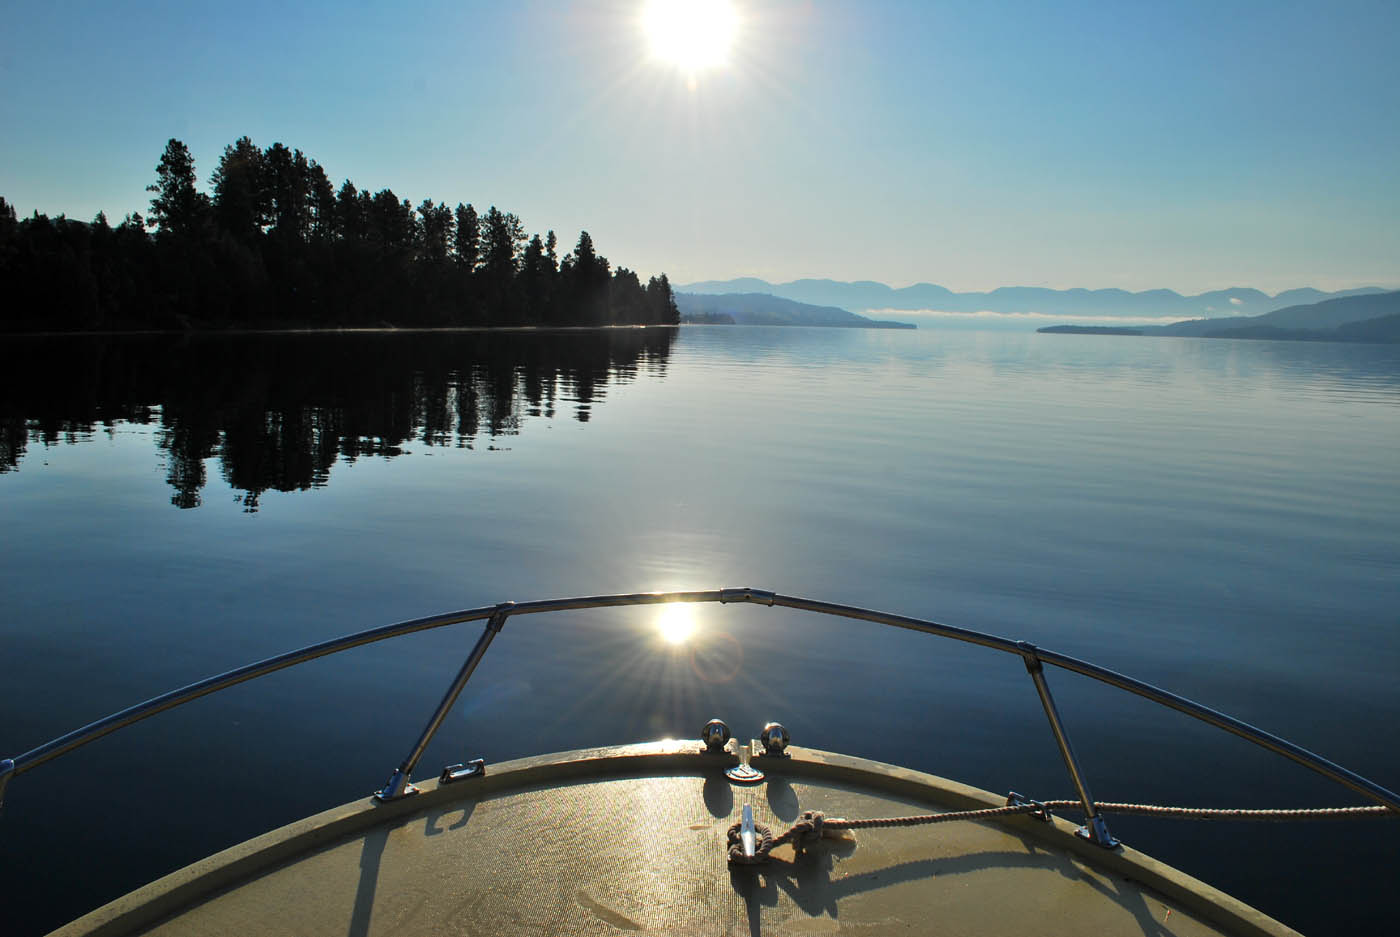 outside of the bubble: Boating on Flathead Lake